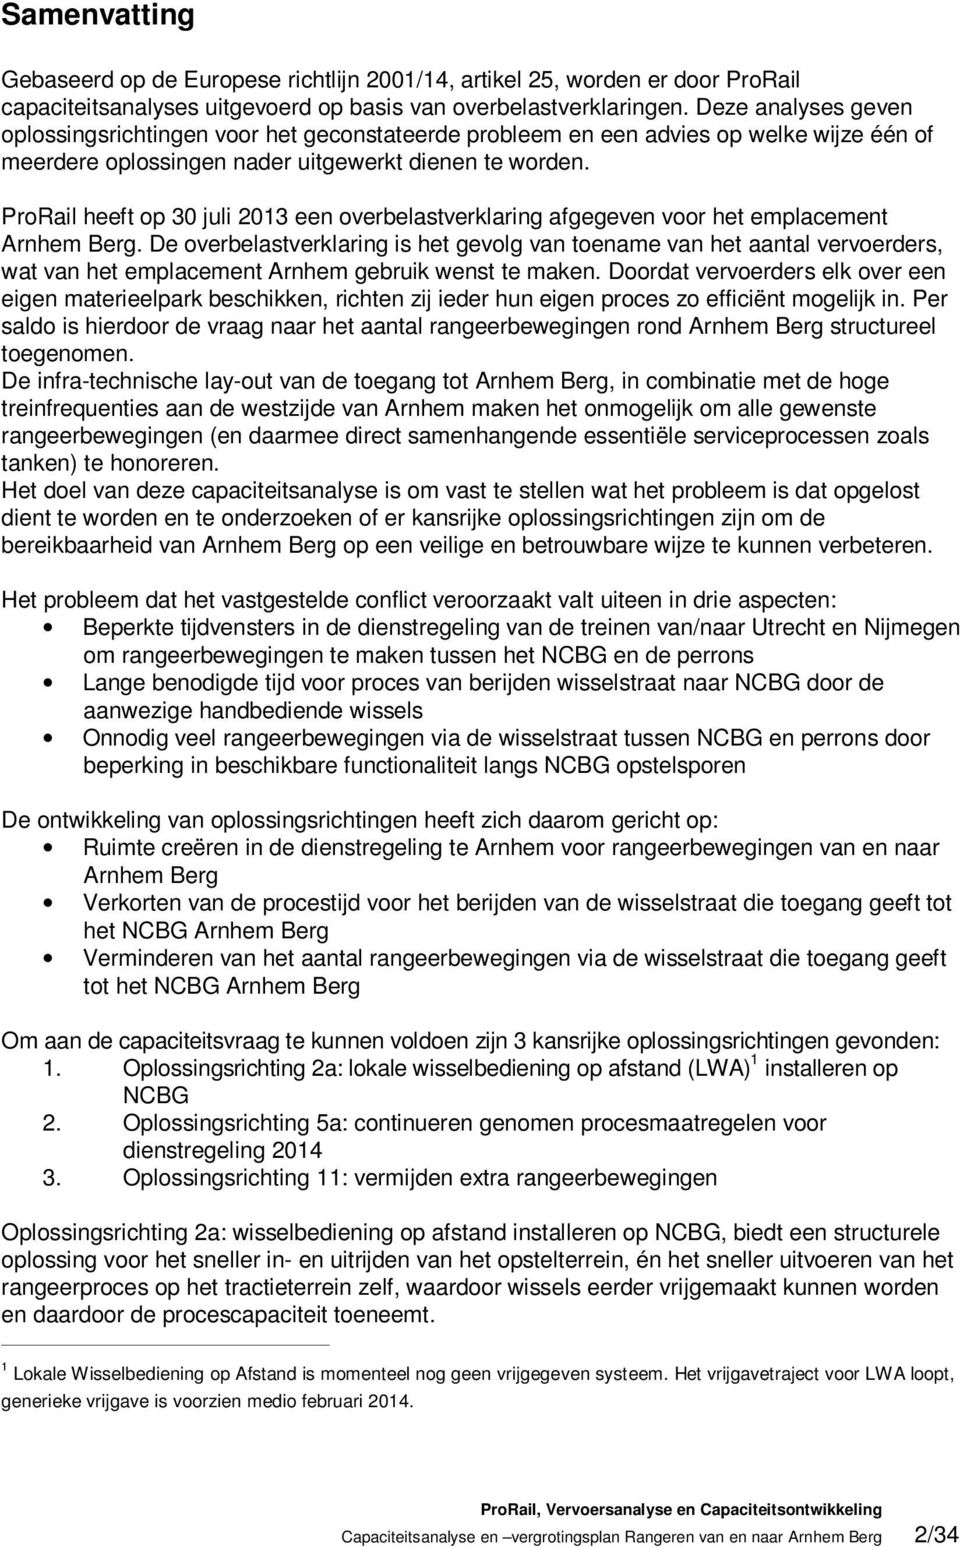 ProRail heeft op 30 juli 2013 een overbelastverklaring afgegeven voor het emplacement Arnhem Berg.